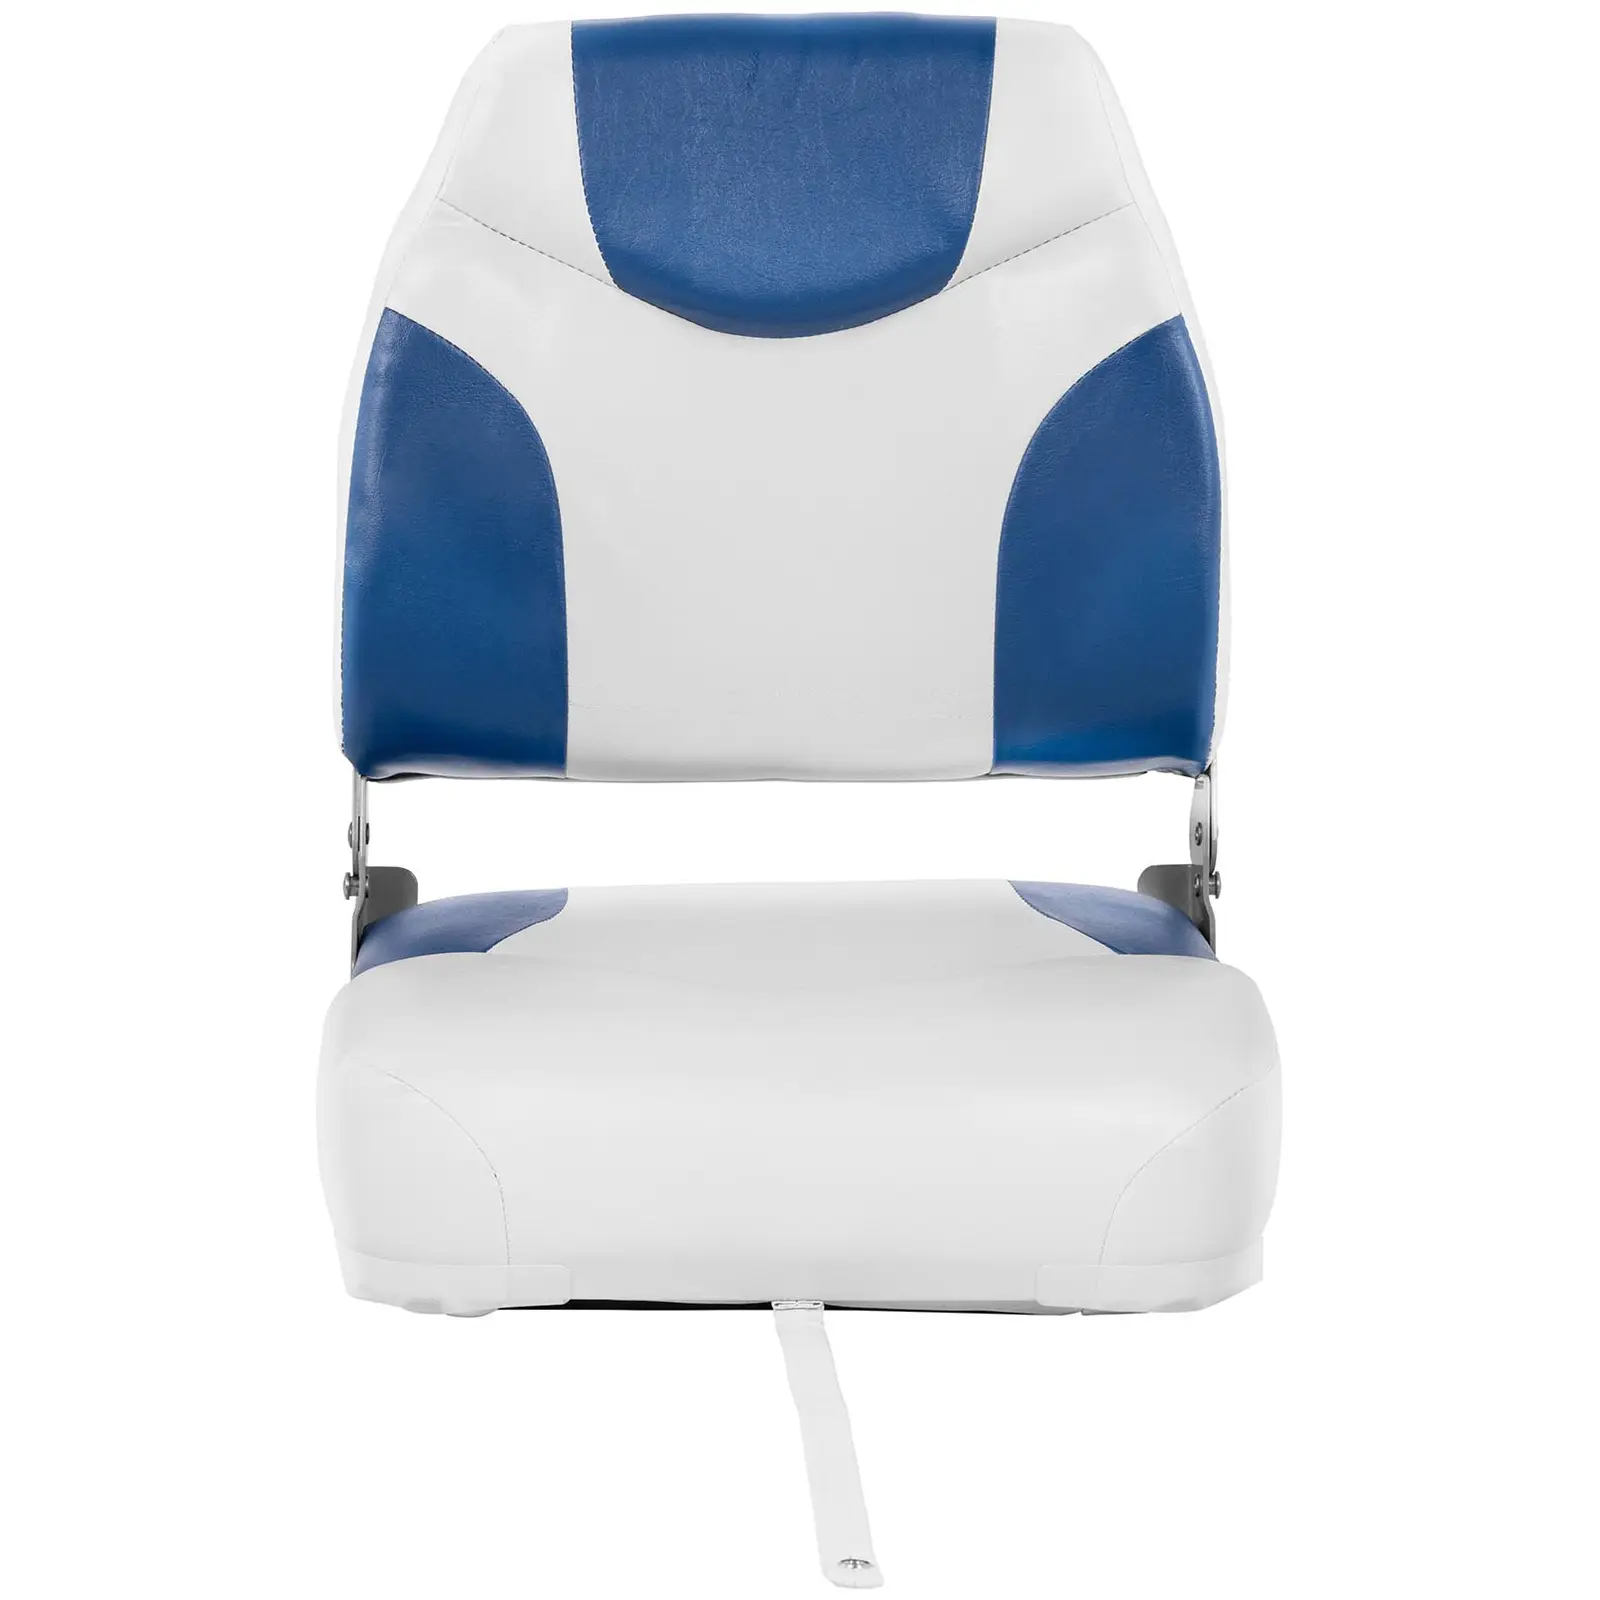 Fotel do łodzi - 40x40x50cm - biało-niebieski